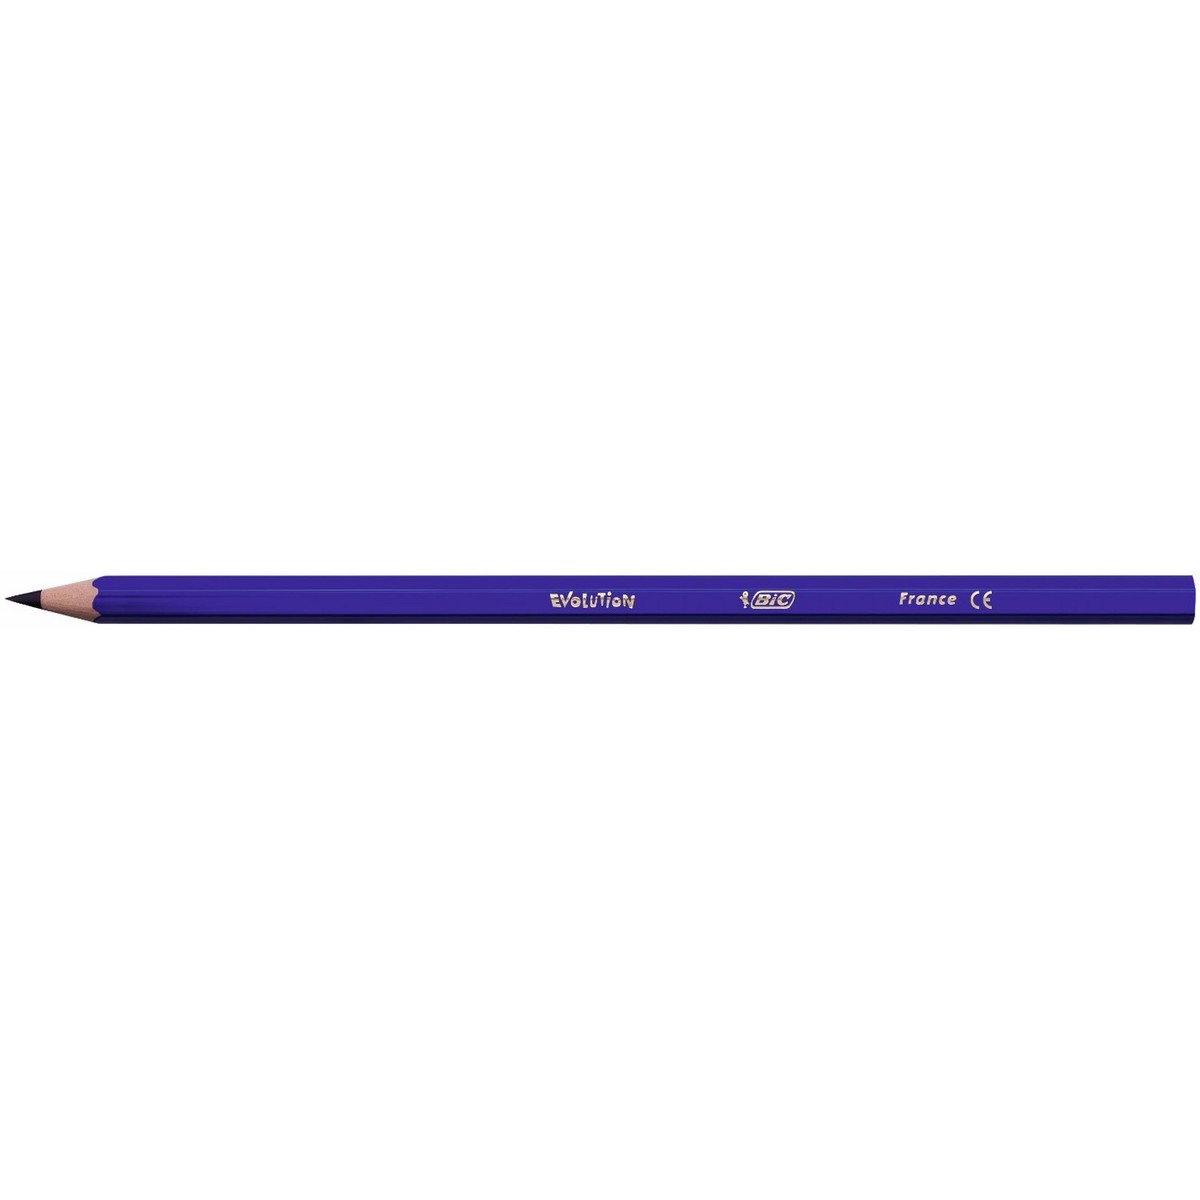 بيك أقلام ألوان رصاص مطورة 12 قطعة